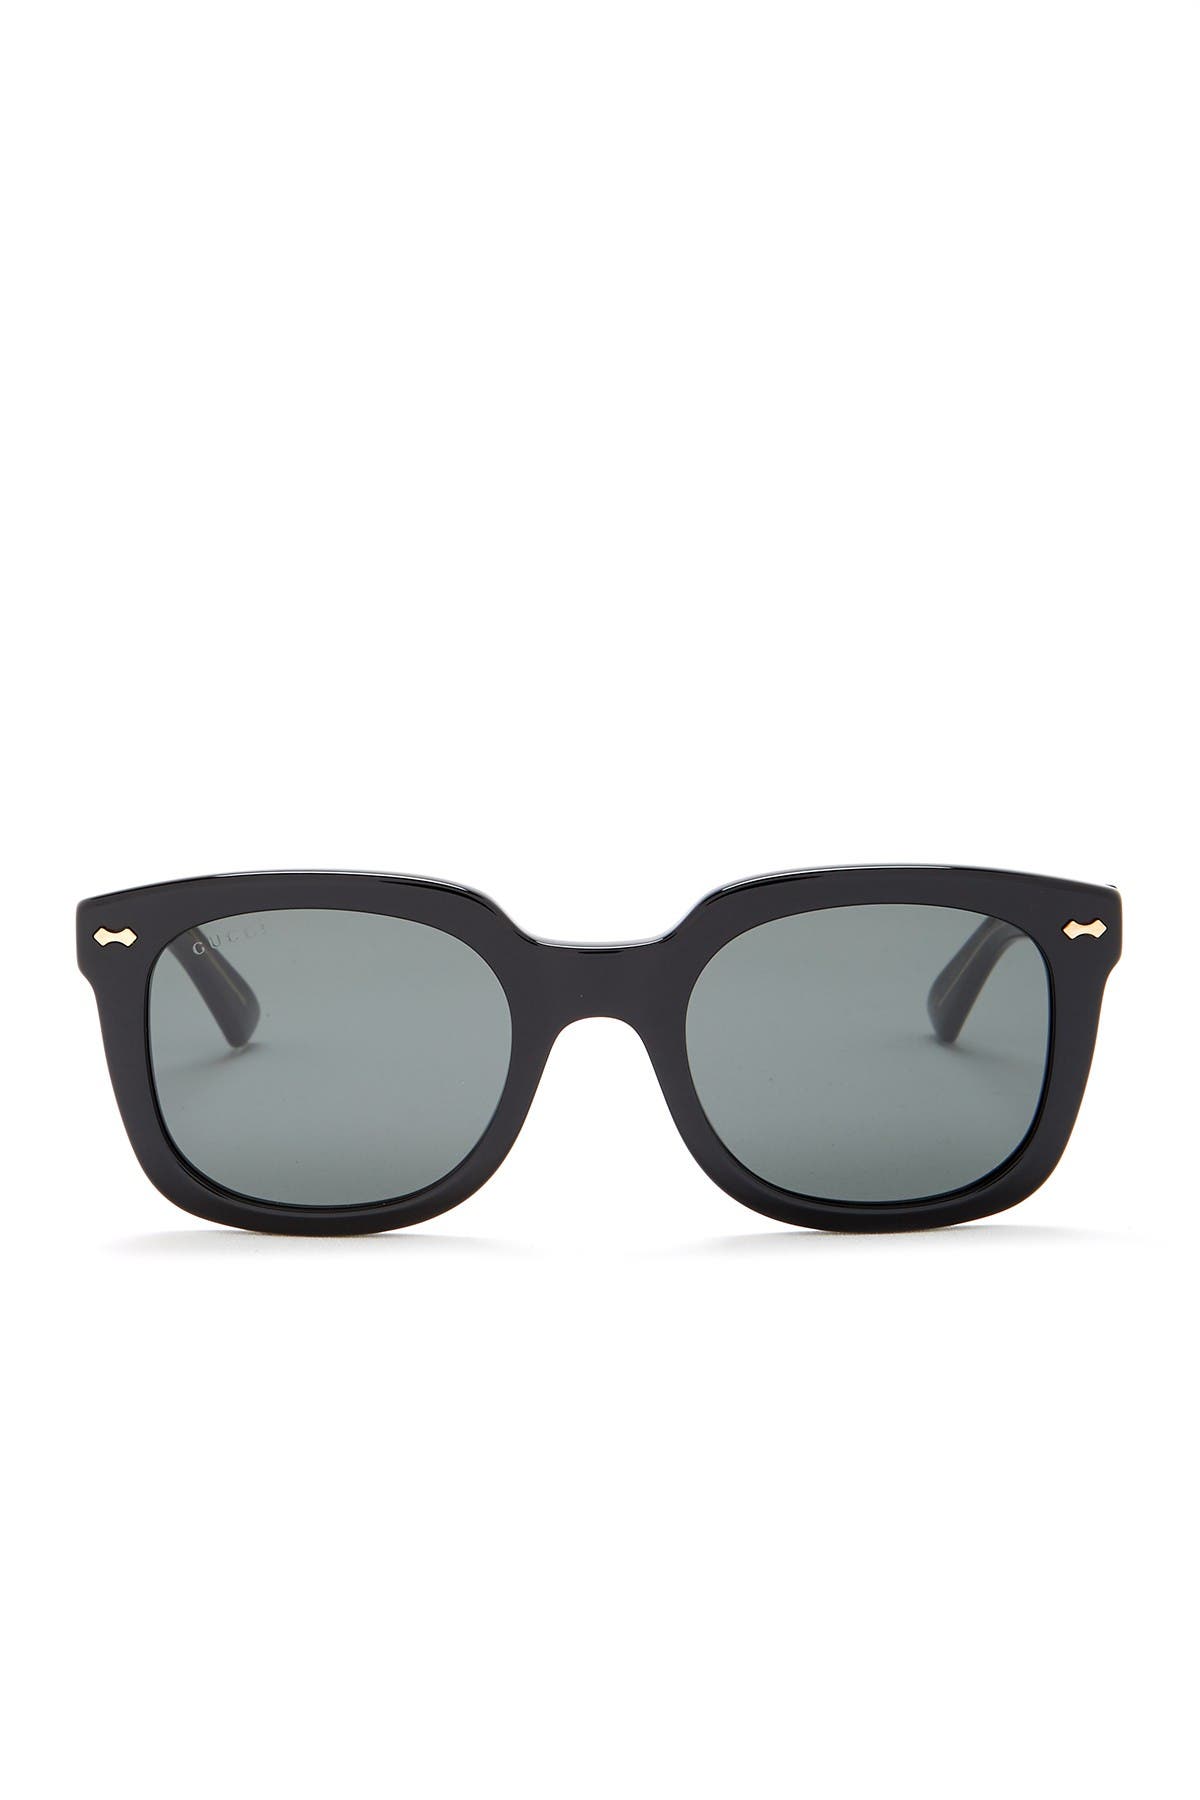 GUCCI | 50mm Square Sunglasses 